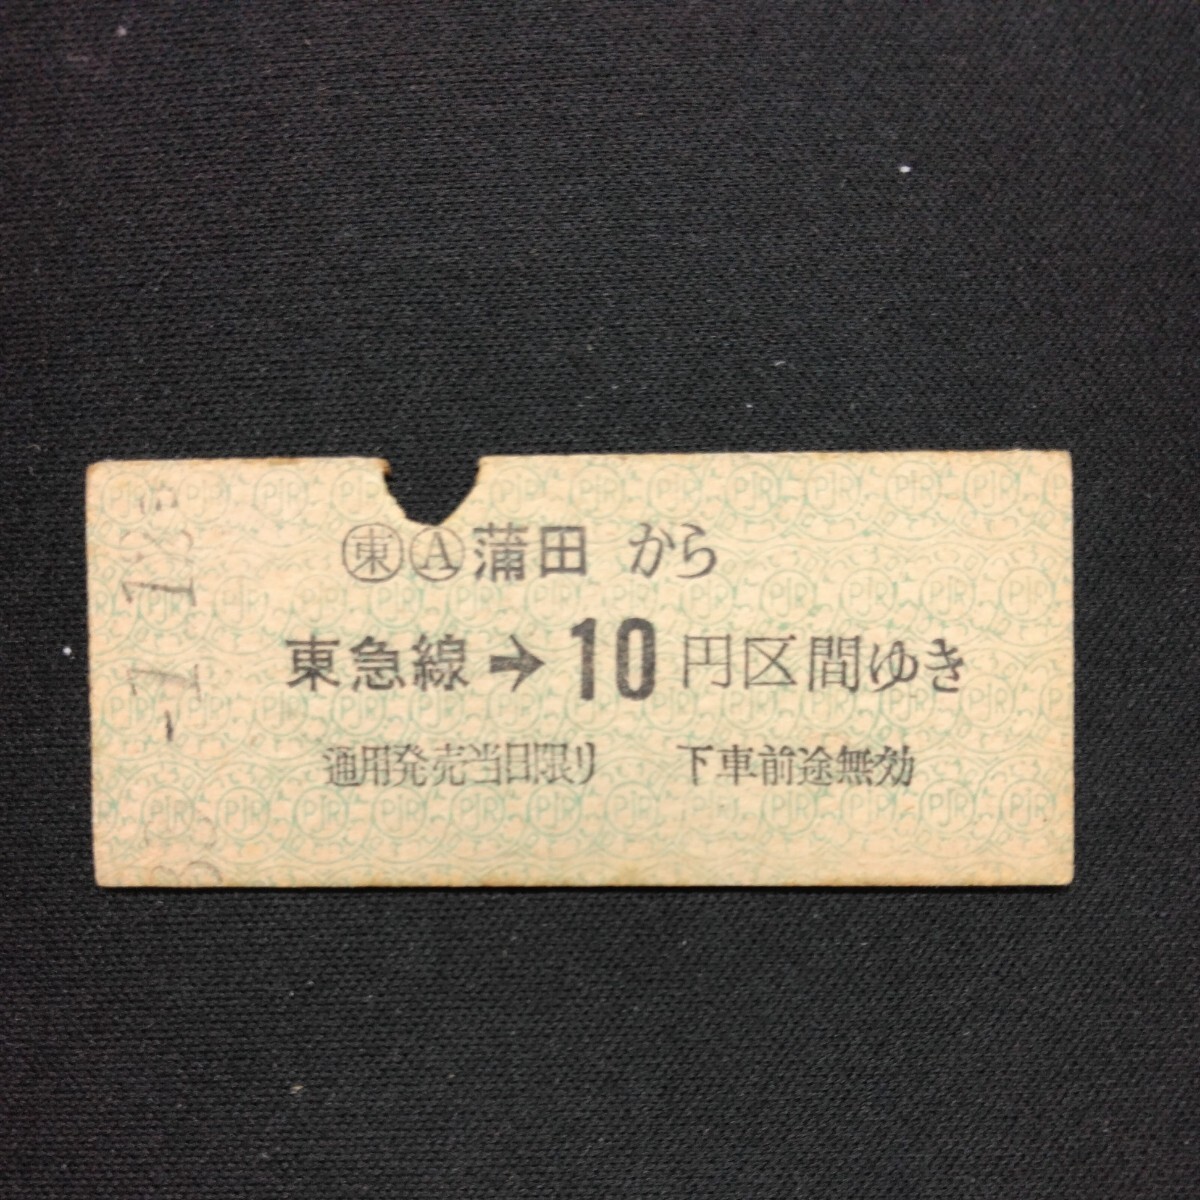 【0243】蒲田から 東急線→ 10円区間ゆき 東京急行電鉄 乗車券 国鉄 鉄道 硬券 古い切符の画像1